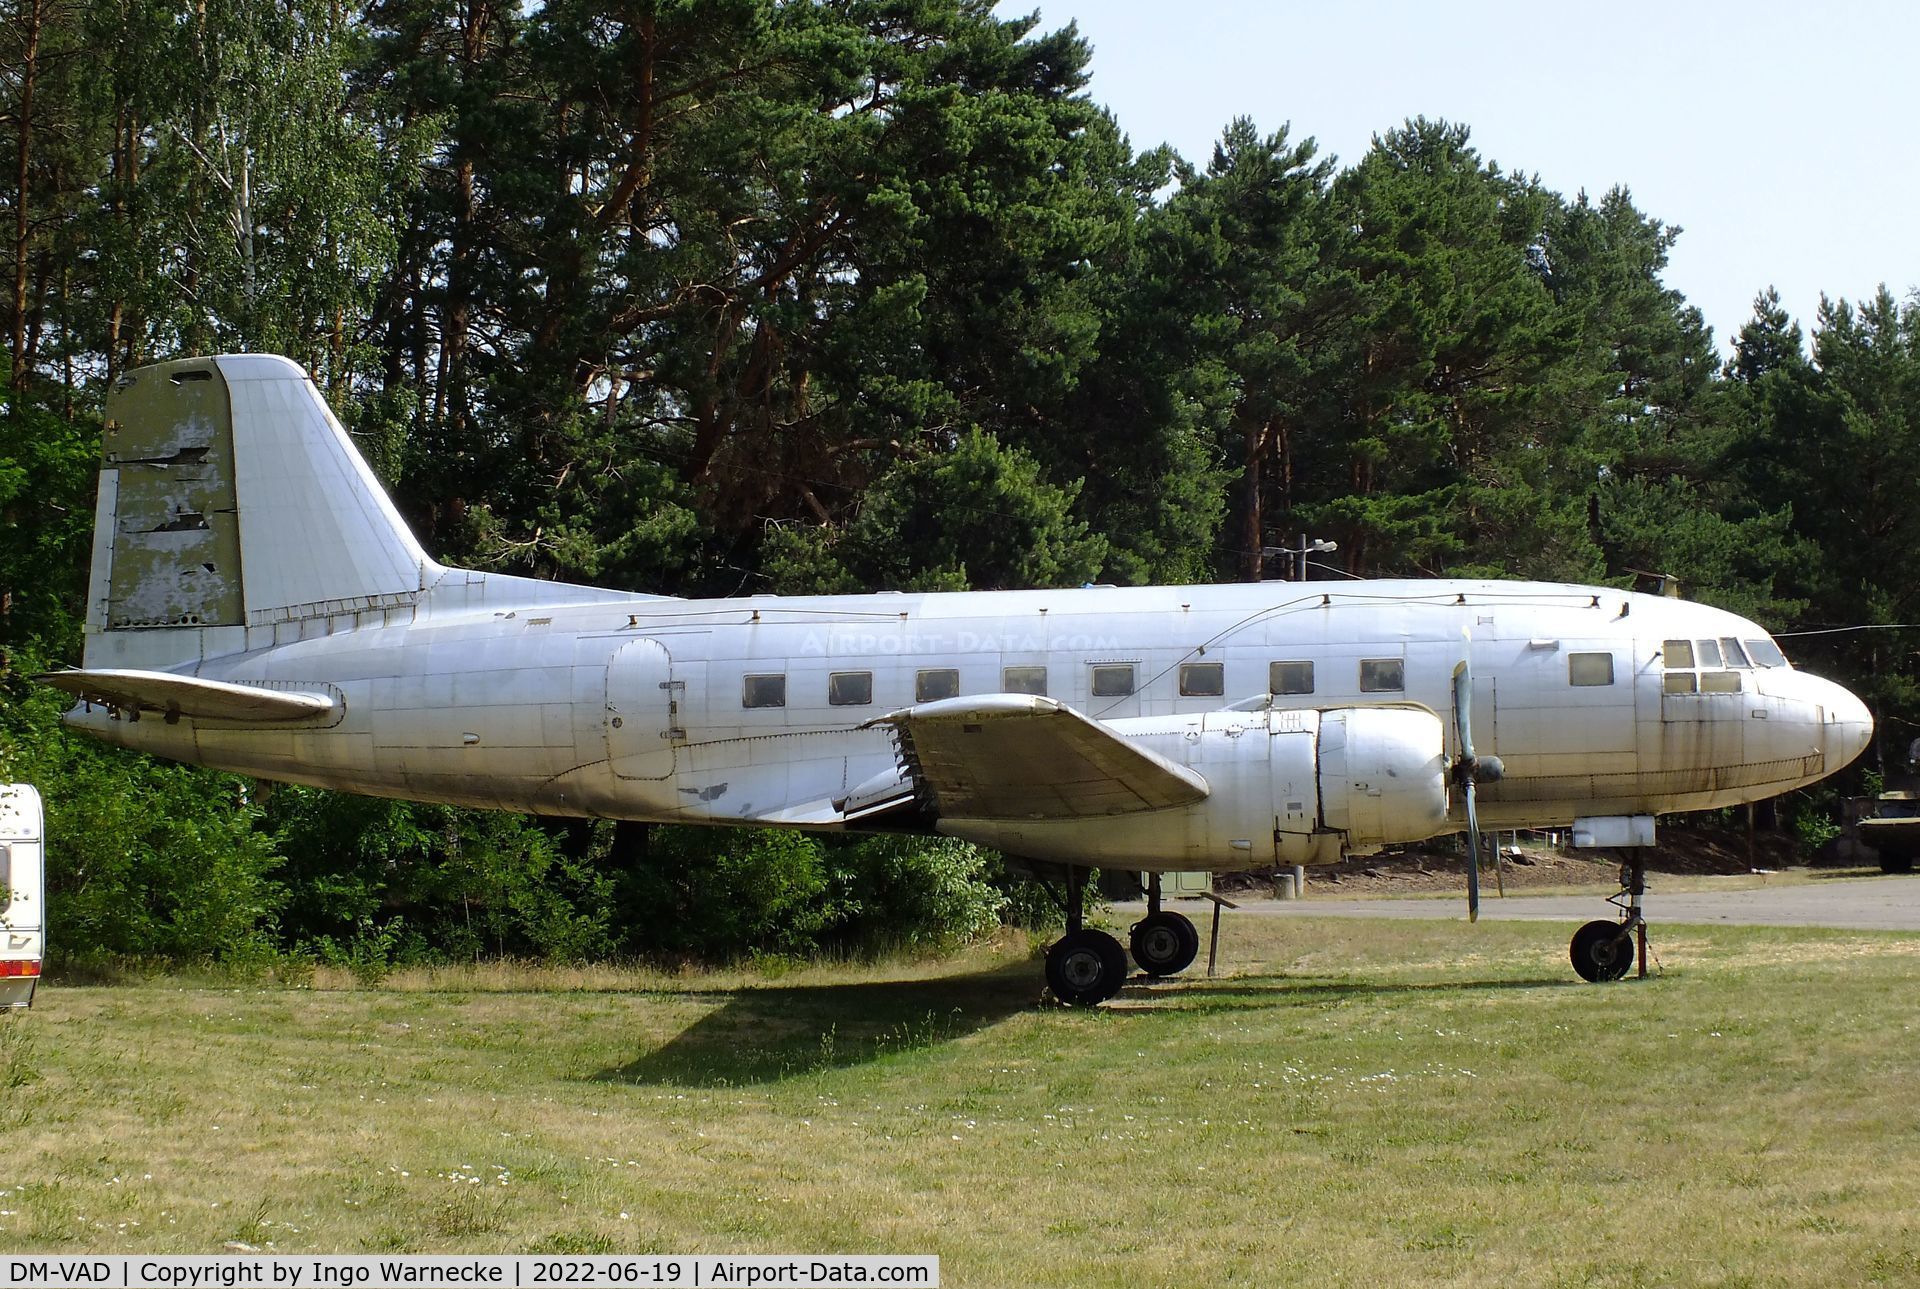 DM-VAD, 1958 Ilyushin (VEB) Il-14P C/N 14803035, Ilyushin (VEB) Il-14P CRATE at the Luftfahrtmuseum Finowfurt